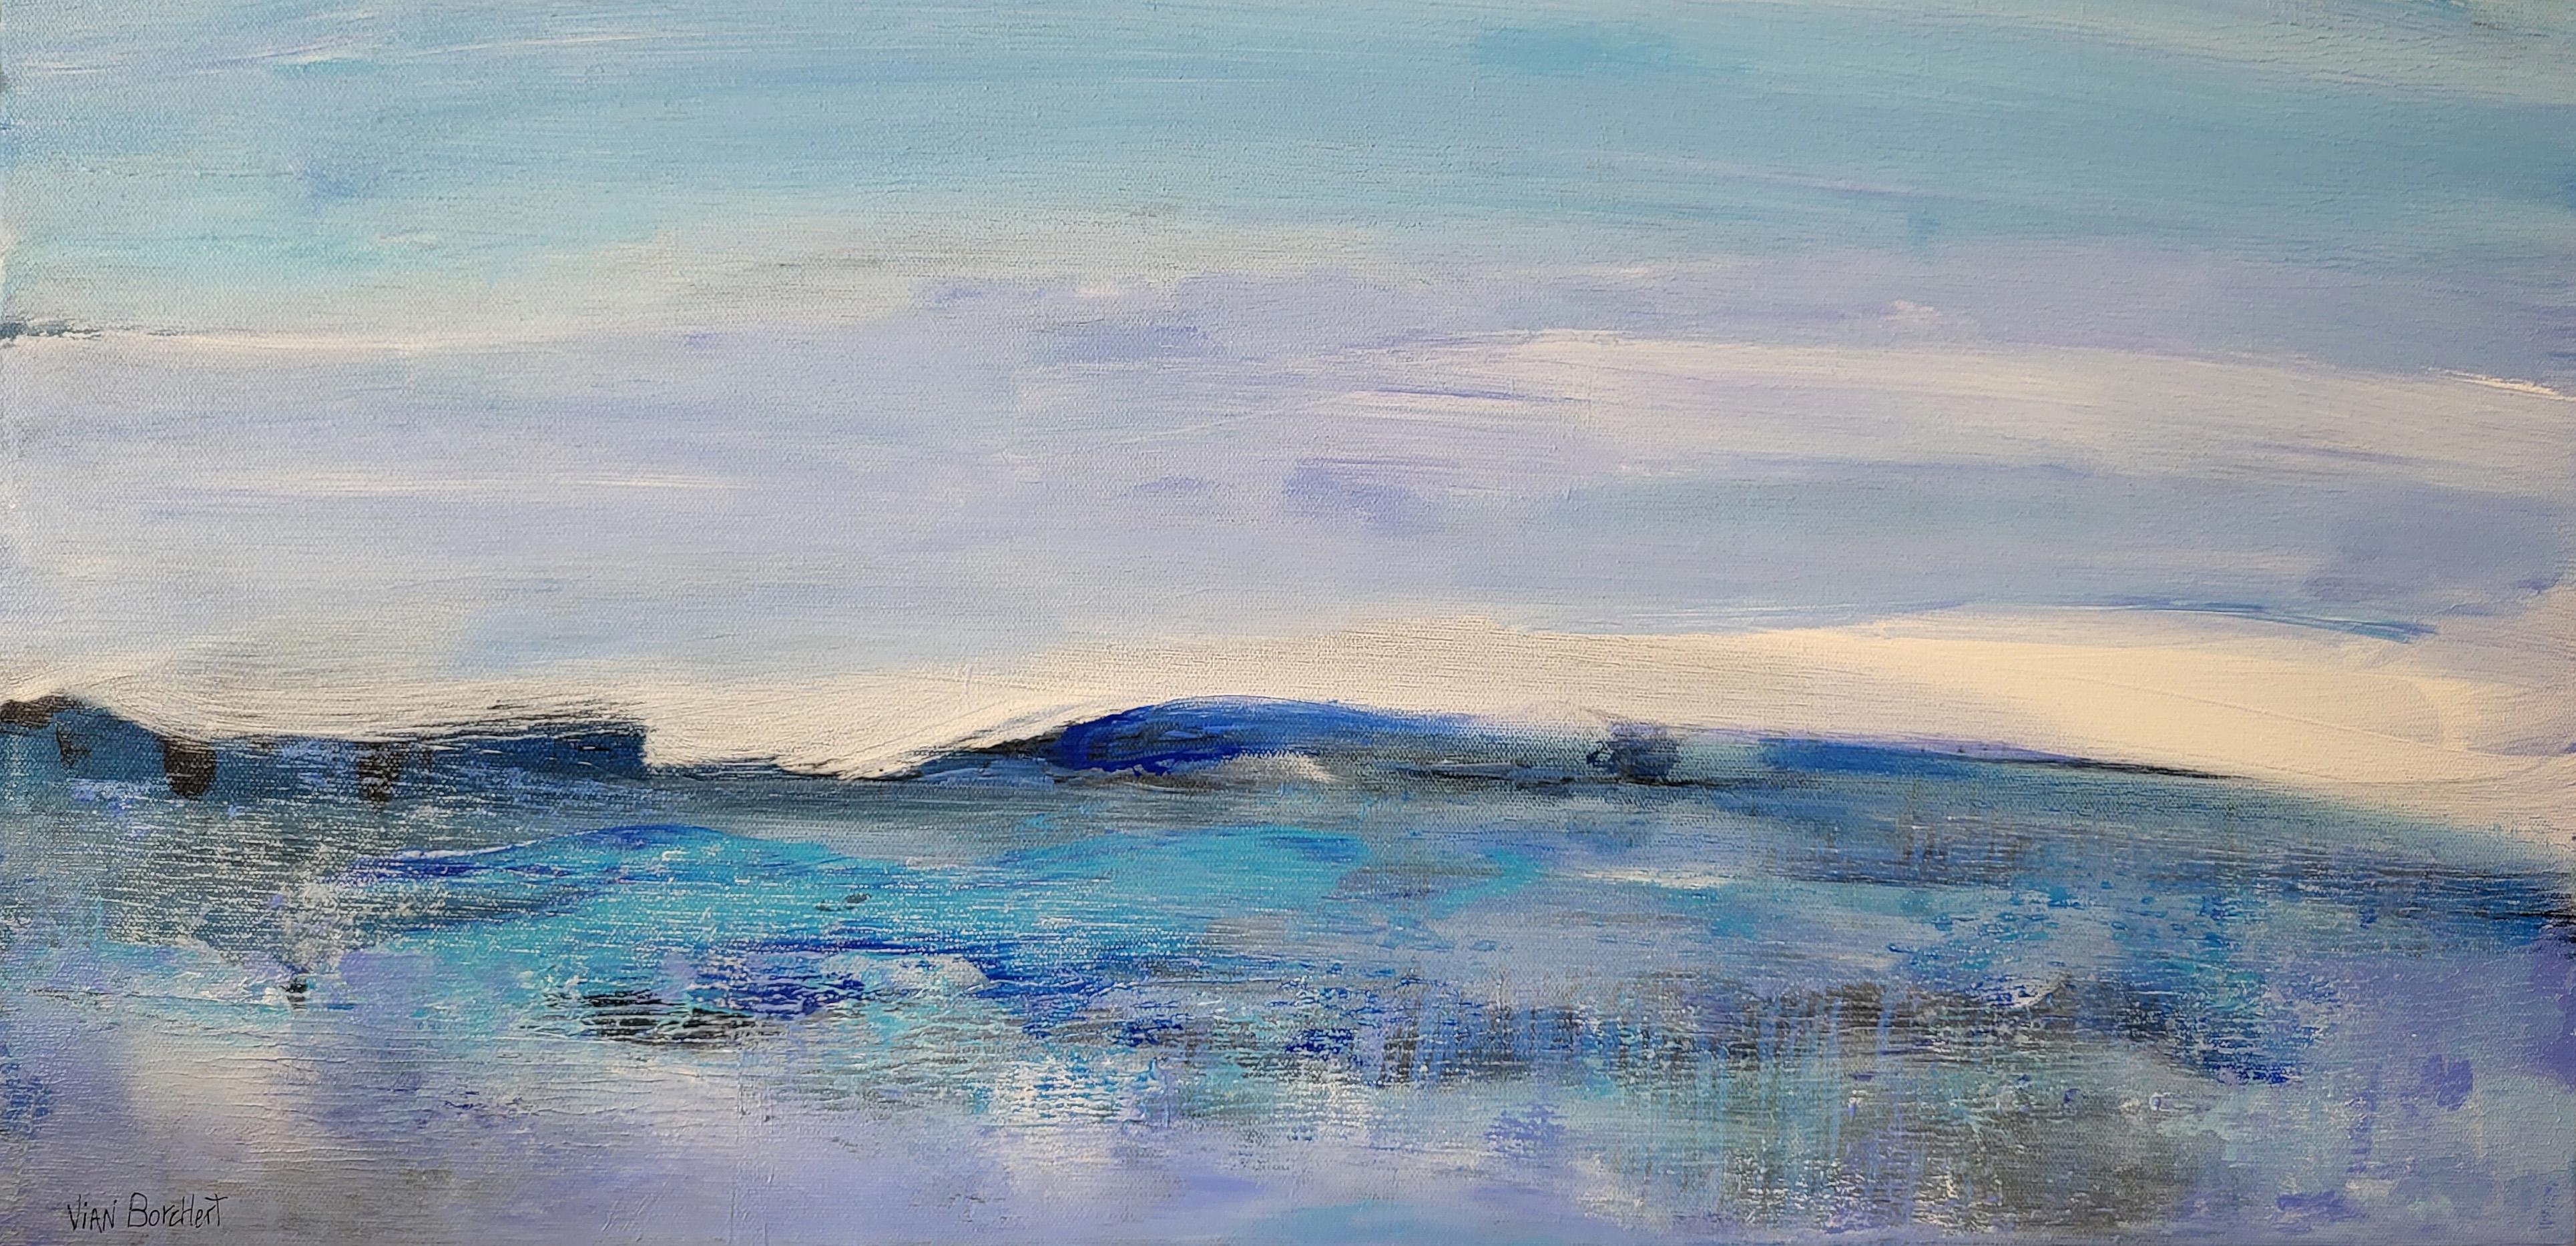 Abstract Painting Vian Borchert - Mist de mer -  (abstrait, paysage marin, peinture, paysage abstrait, mer, paysage marin)